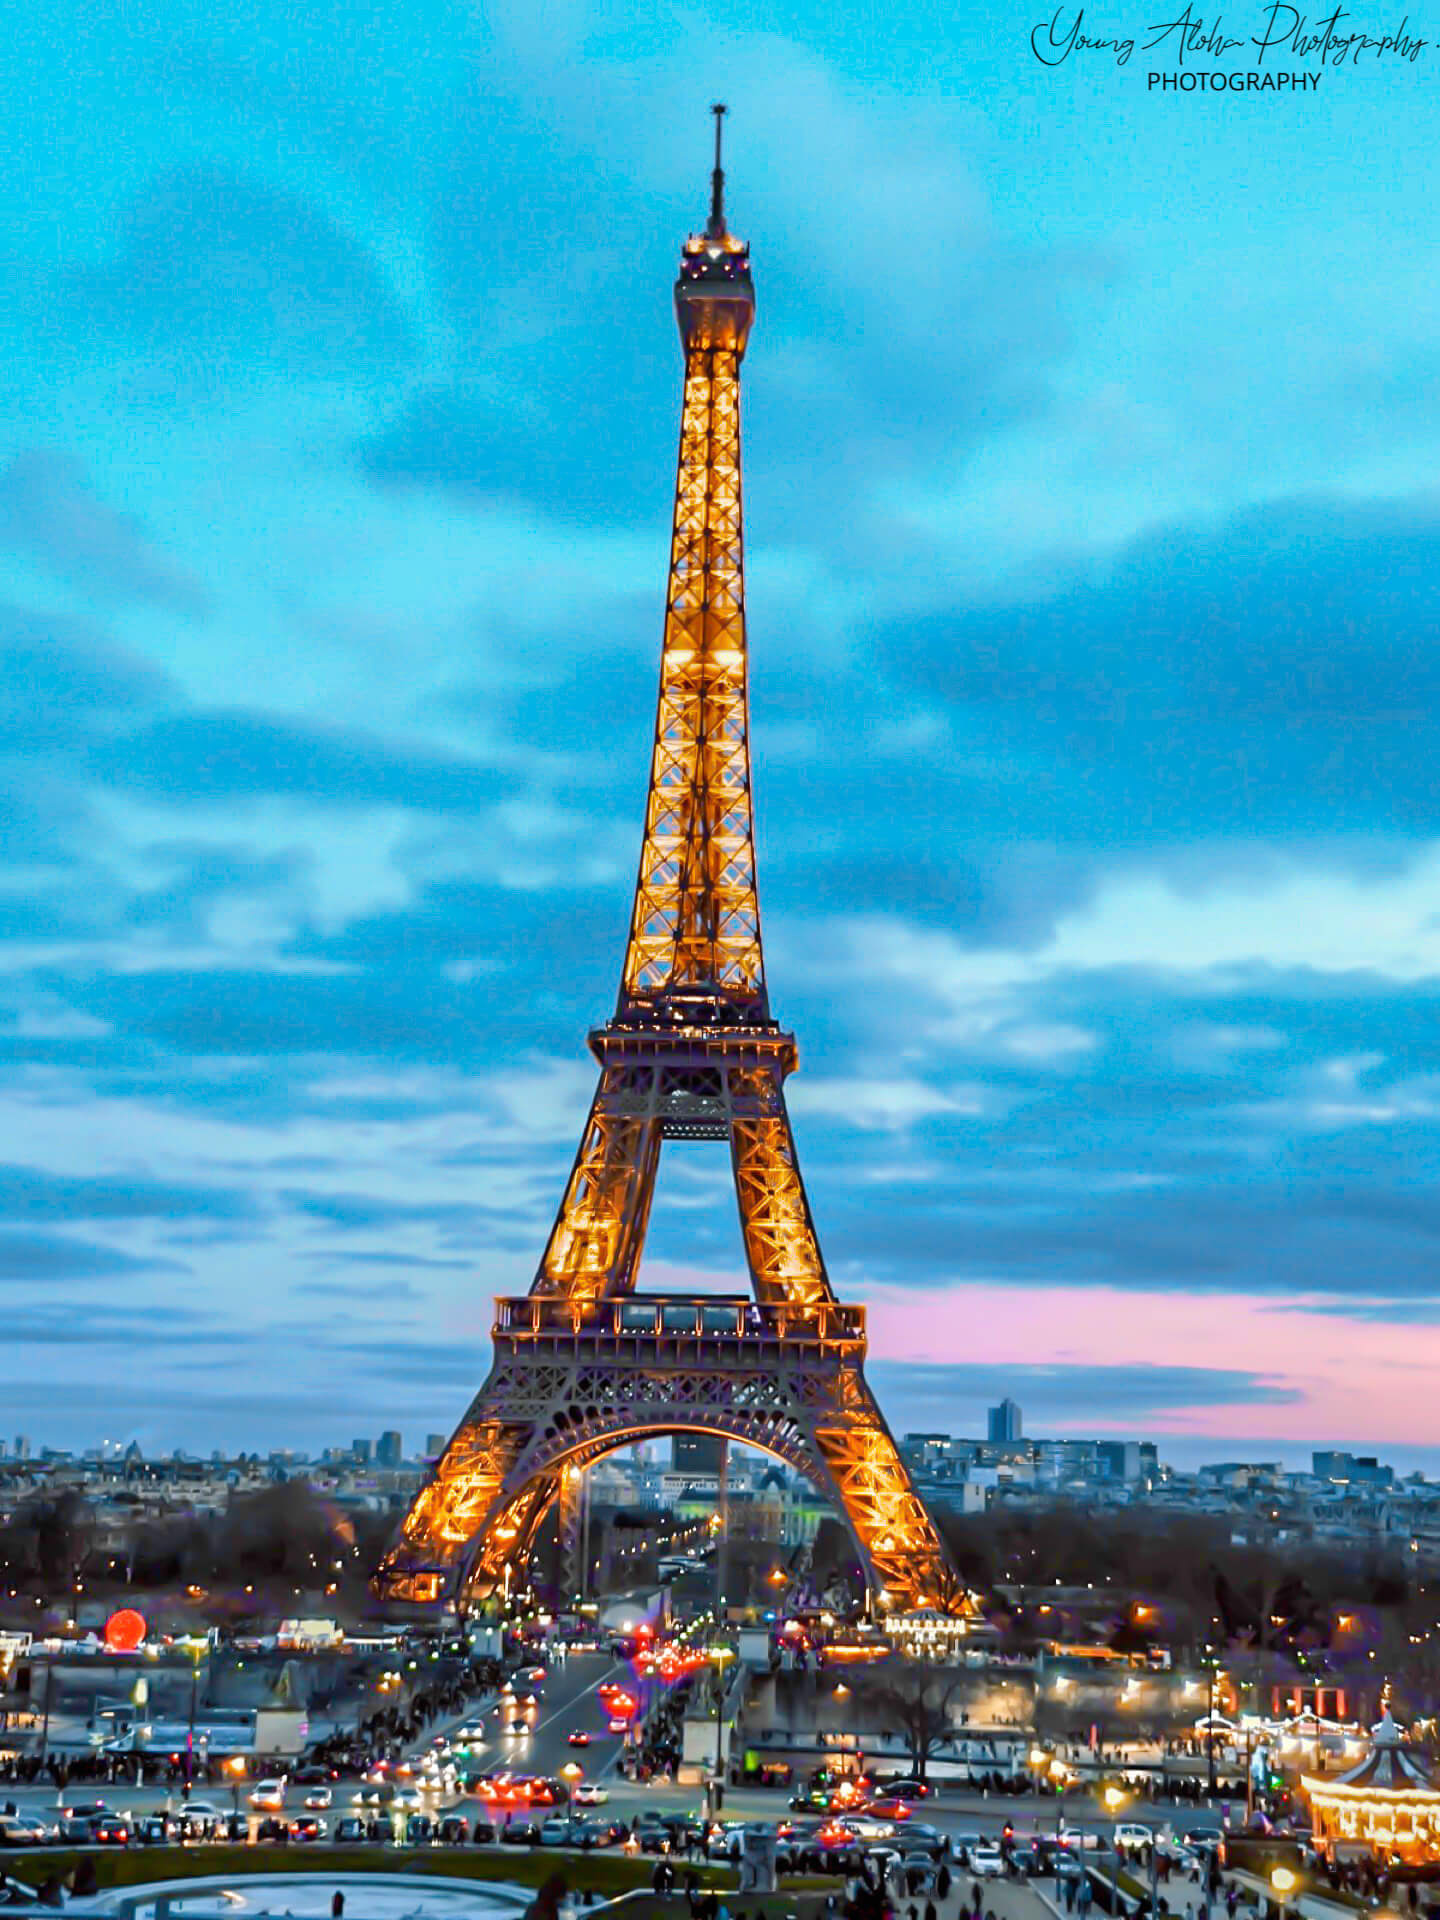 The magnificent Eiffel Tower, Paris, France